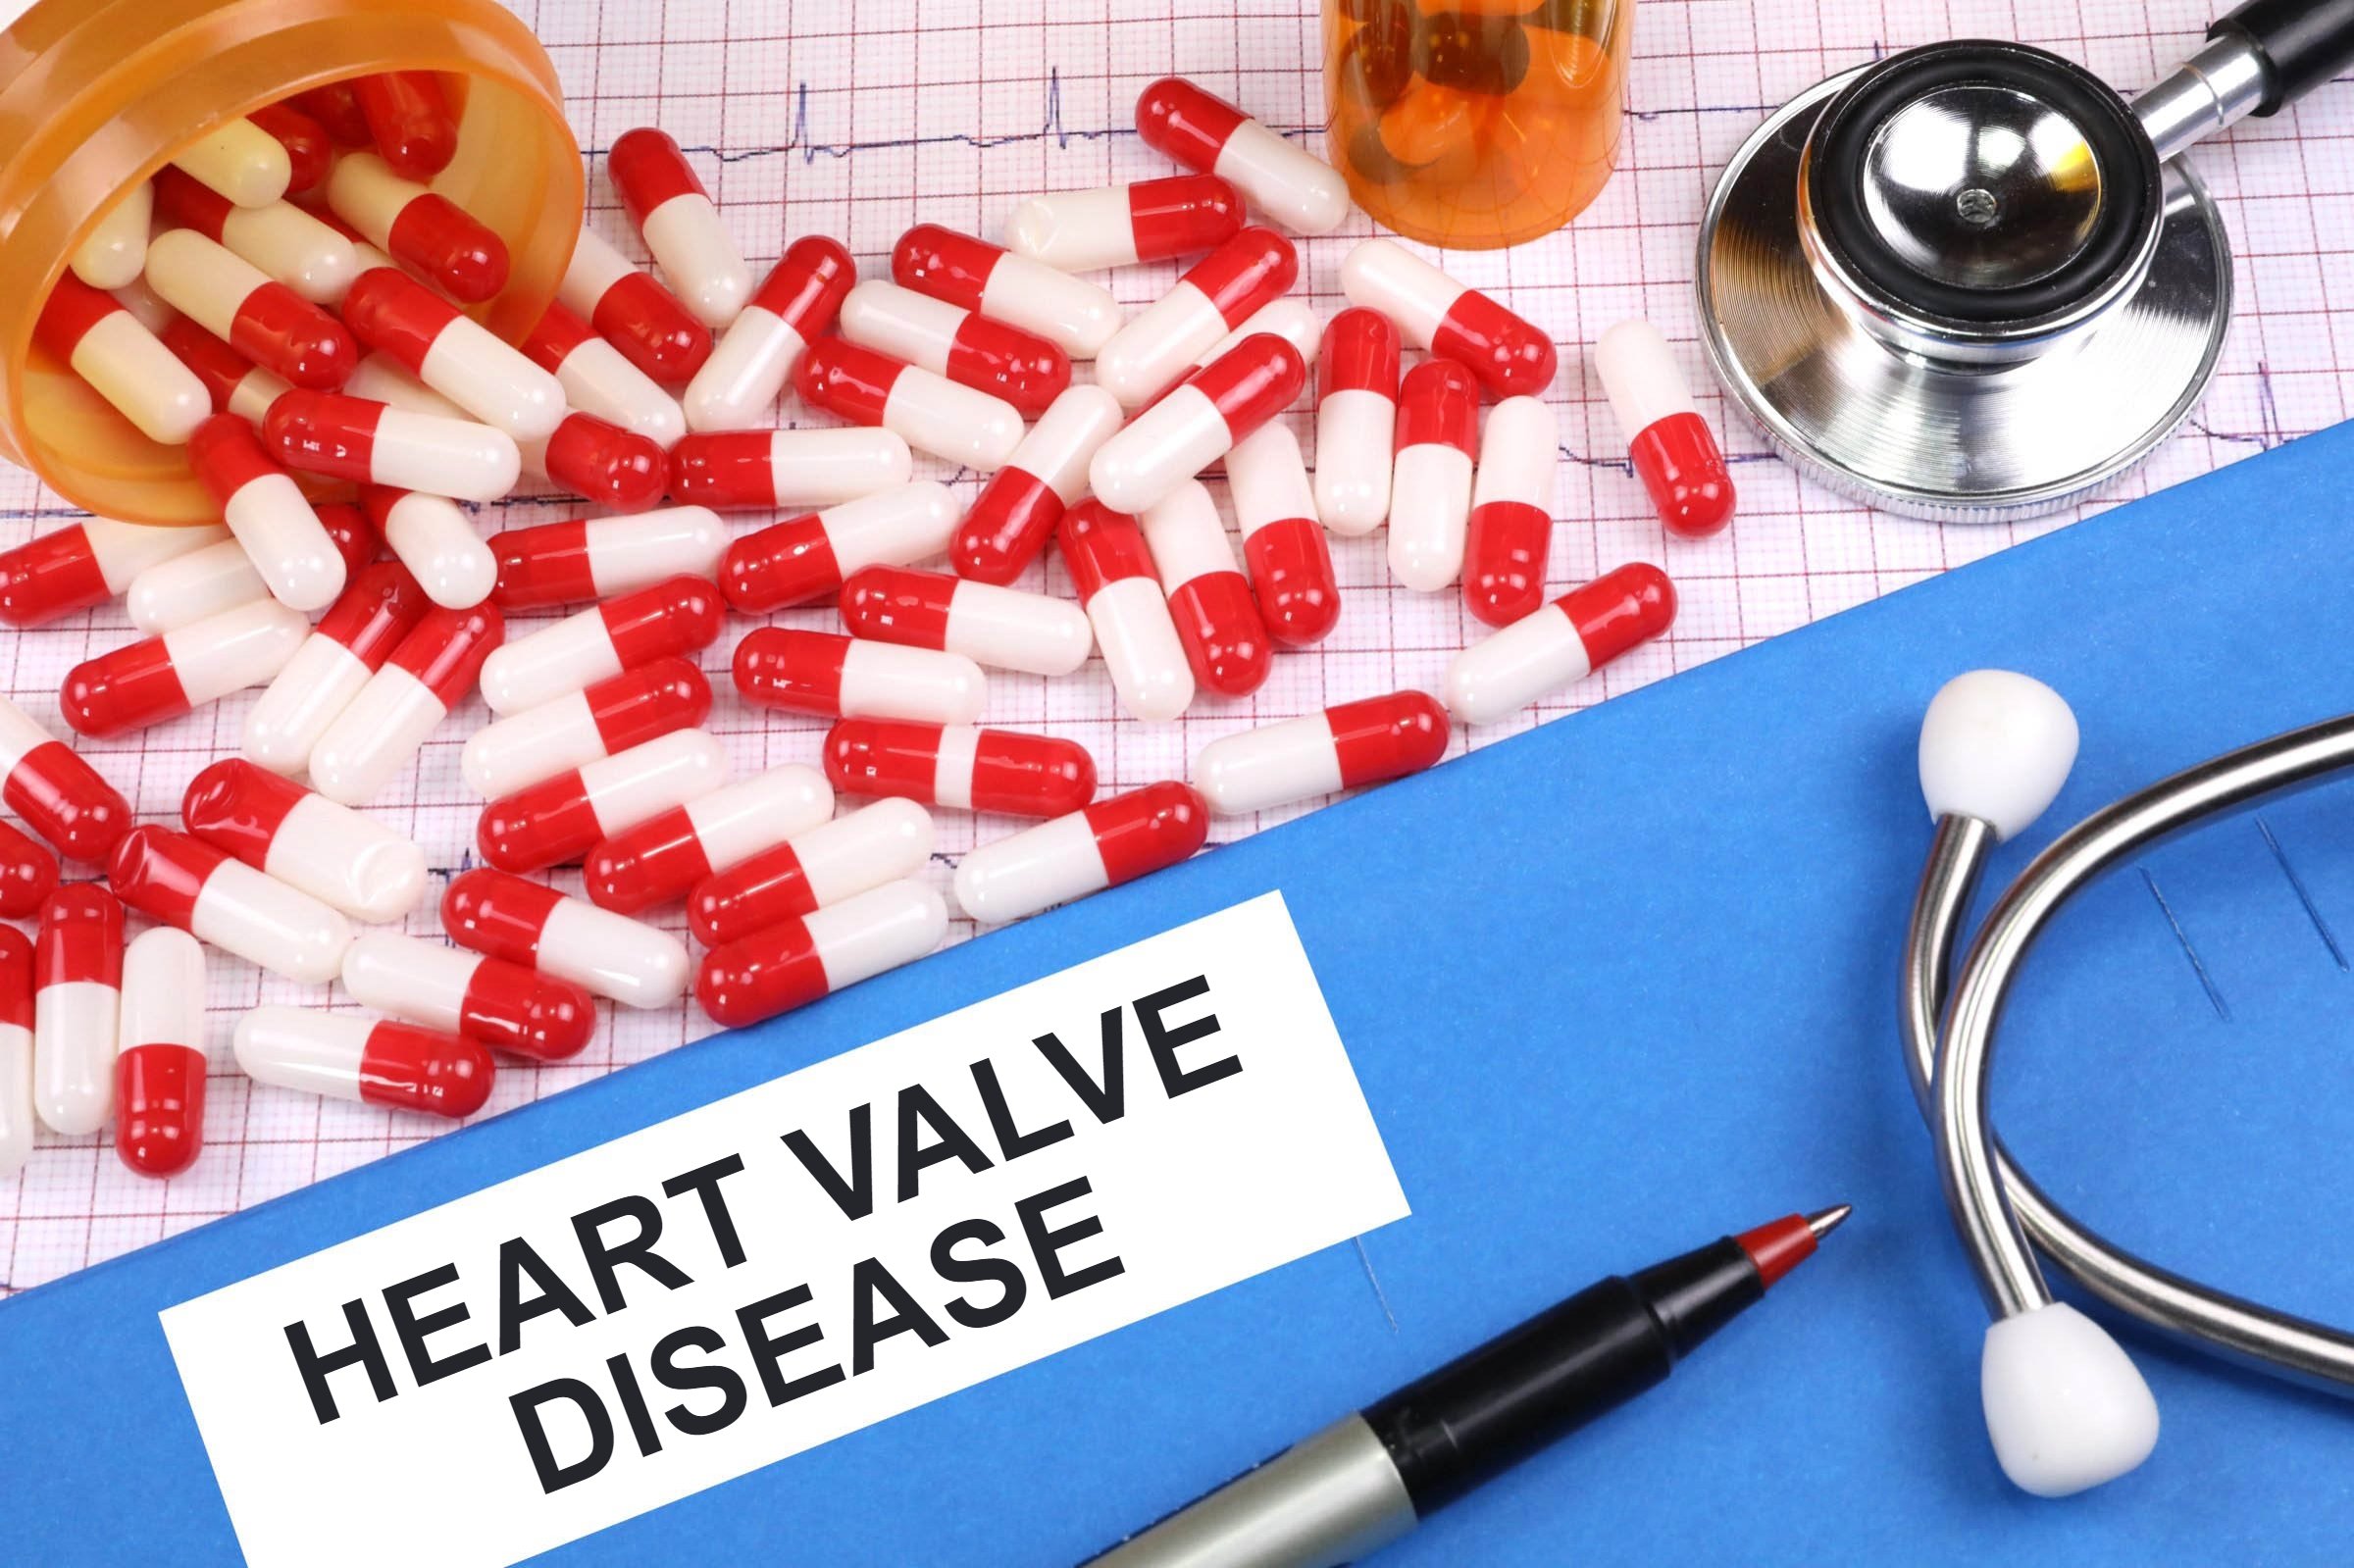 heart valve disease